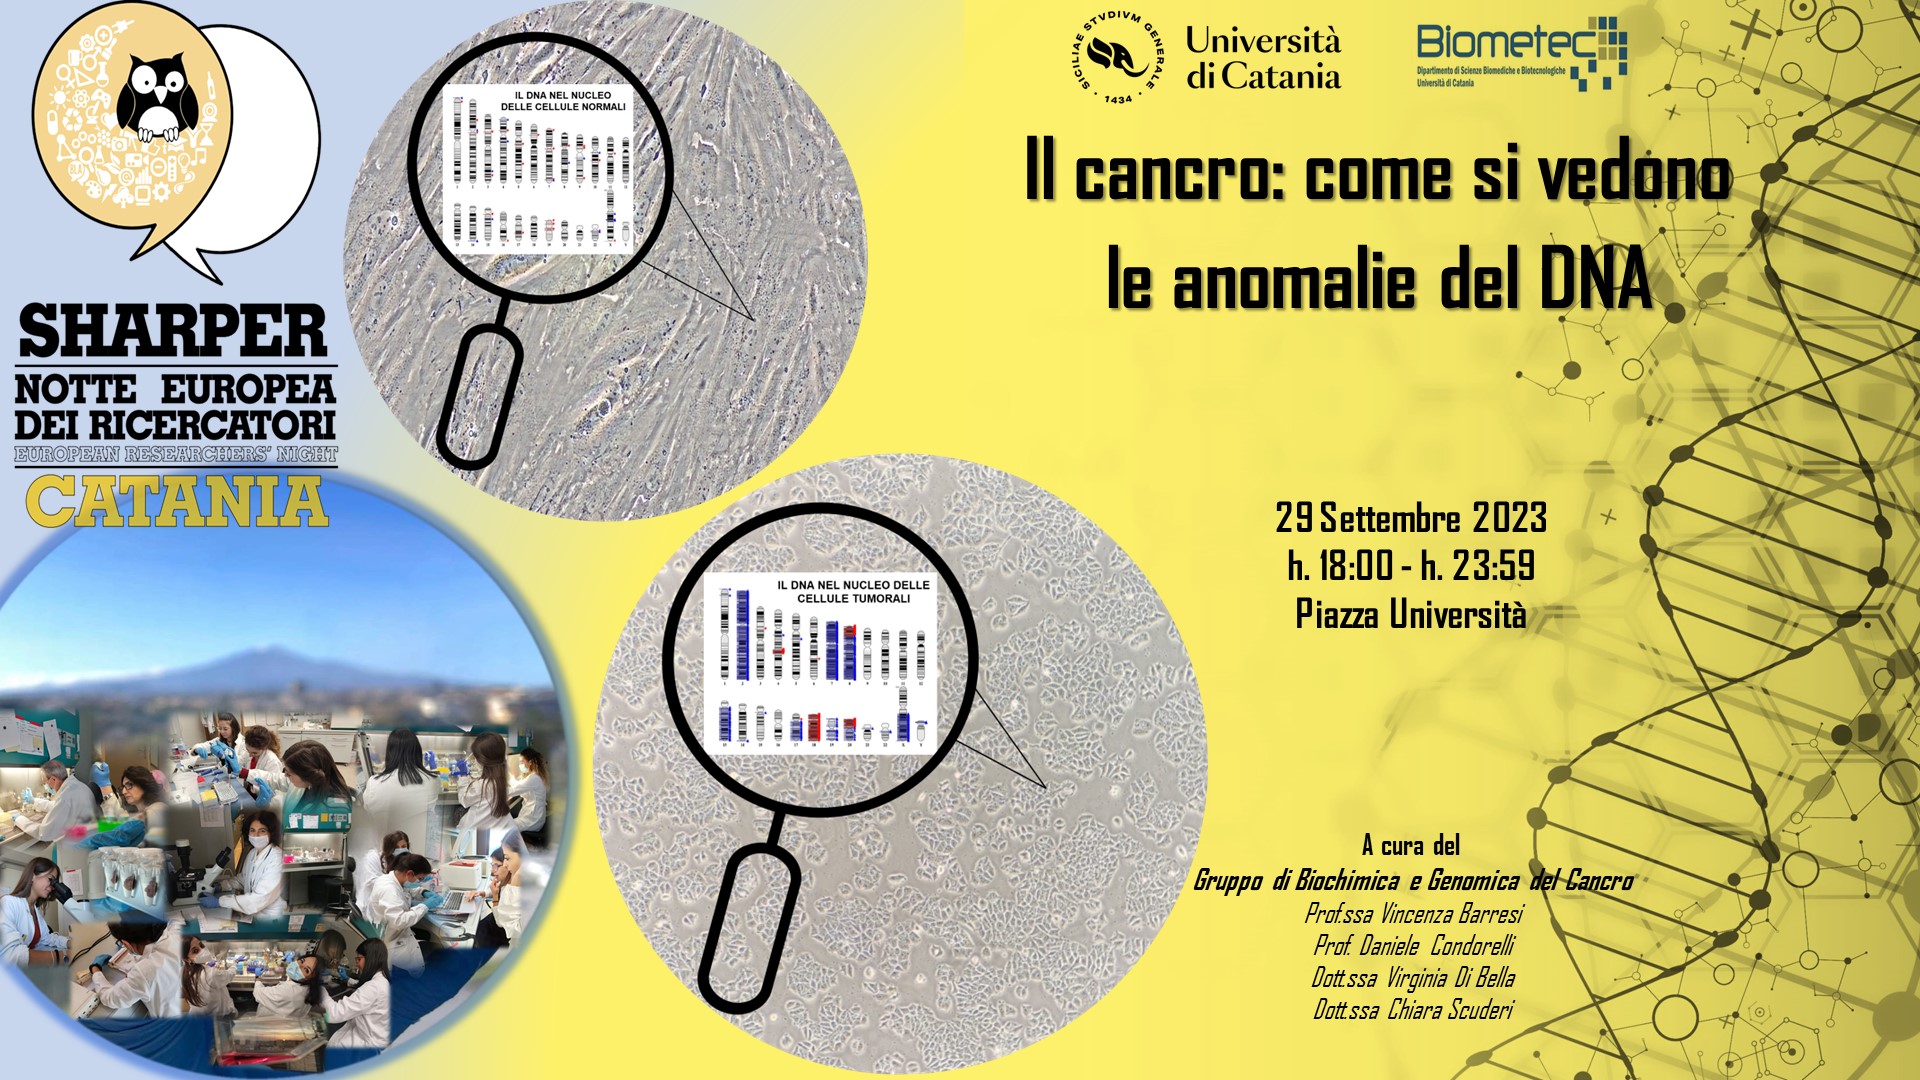 Biometec - Unict, Università di Catania